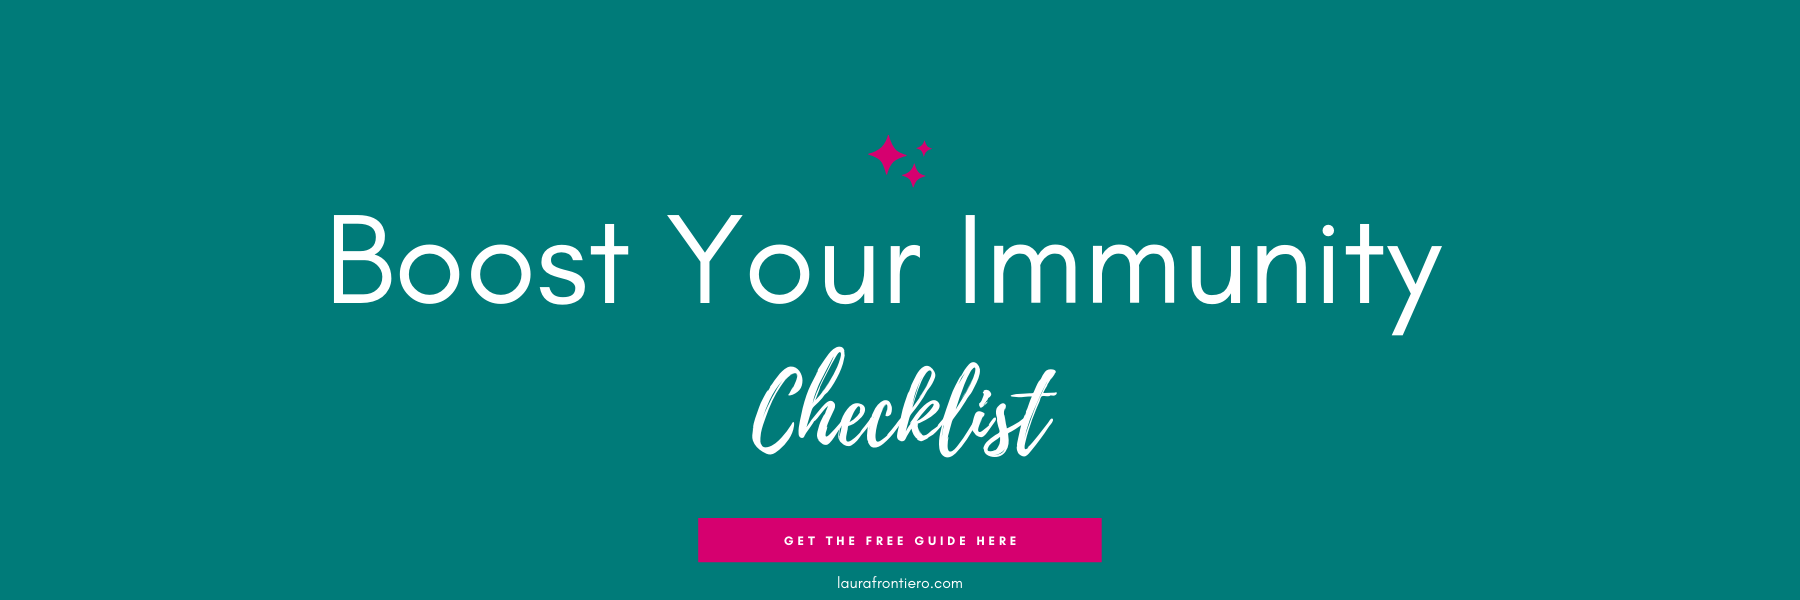 ImmunityChecklist